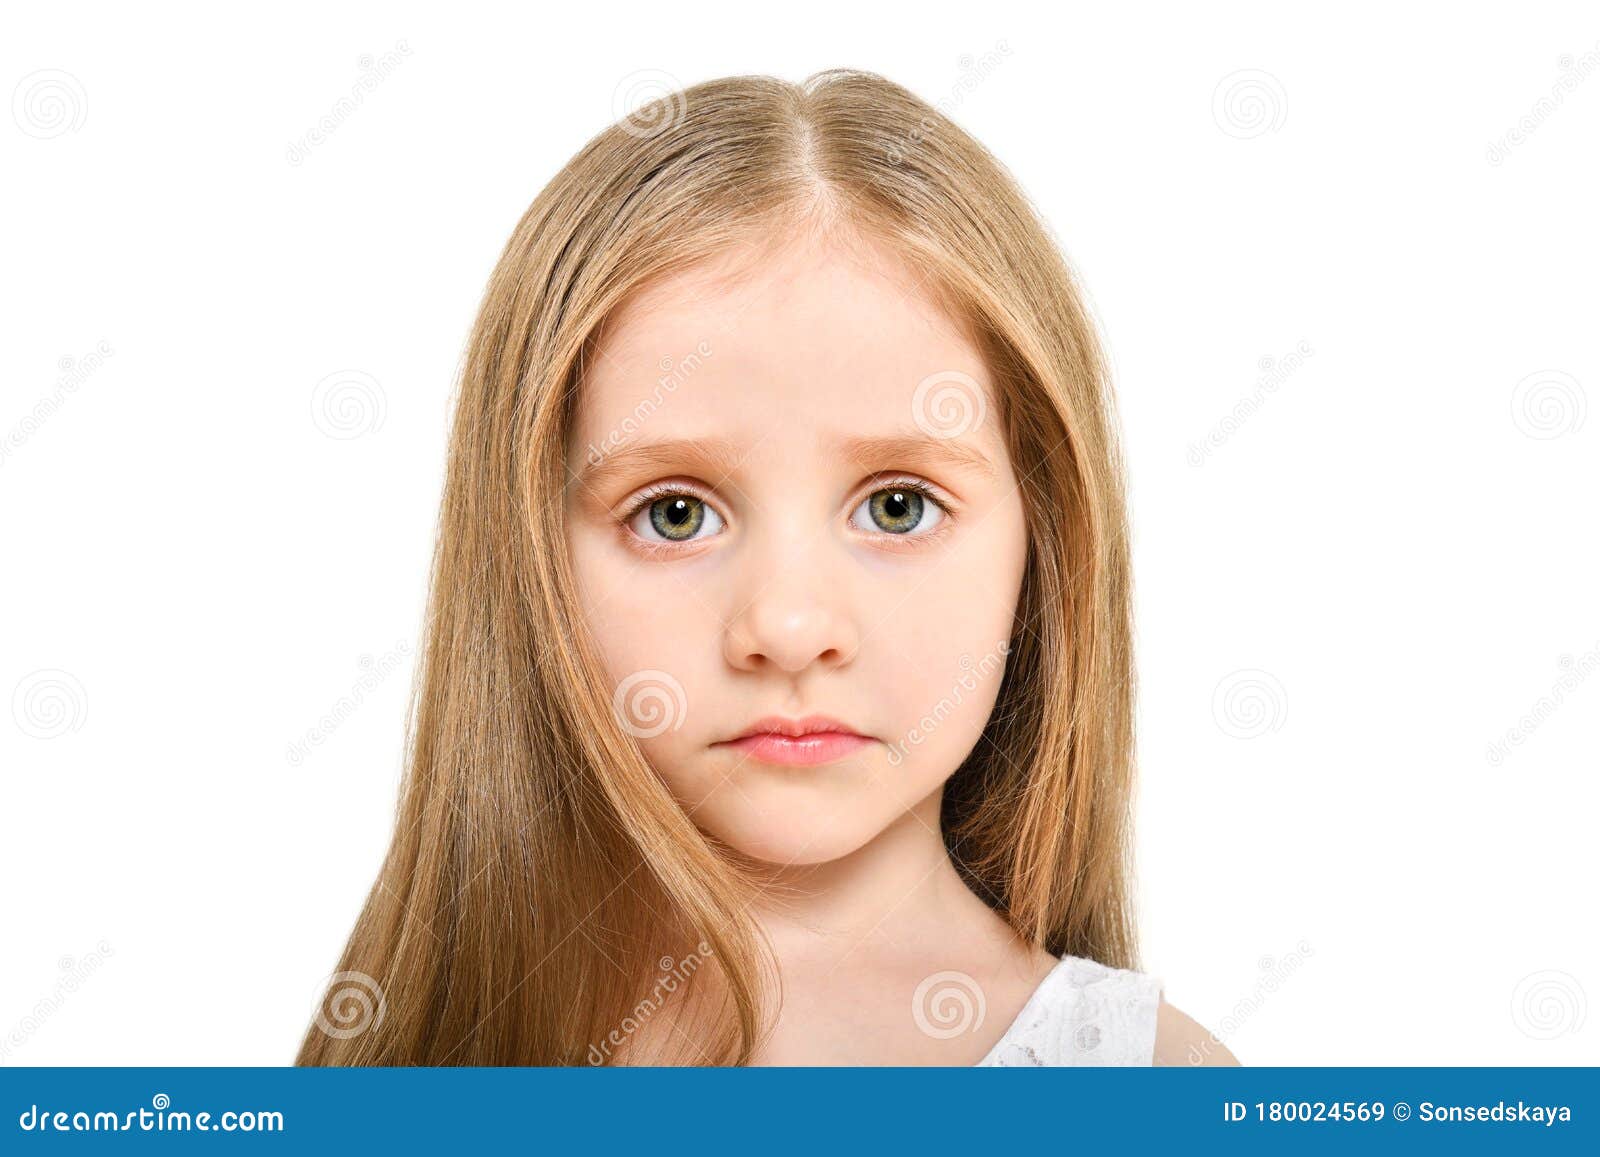 悲伤小女孩的肖像 库存图片. 图片 包括有 女性, 教育, 恐惧, 无家可归, 沮丧, 子项, 查找, 被滥用的 - 174295727